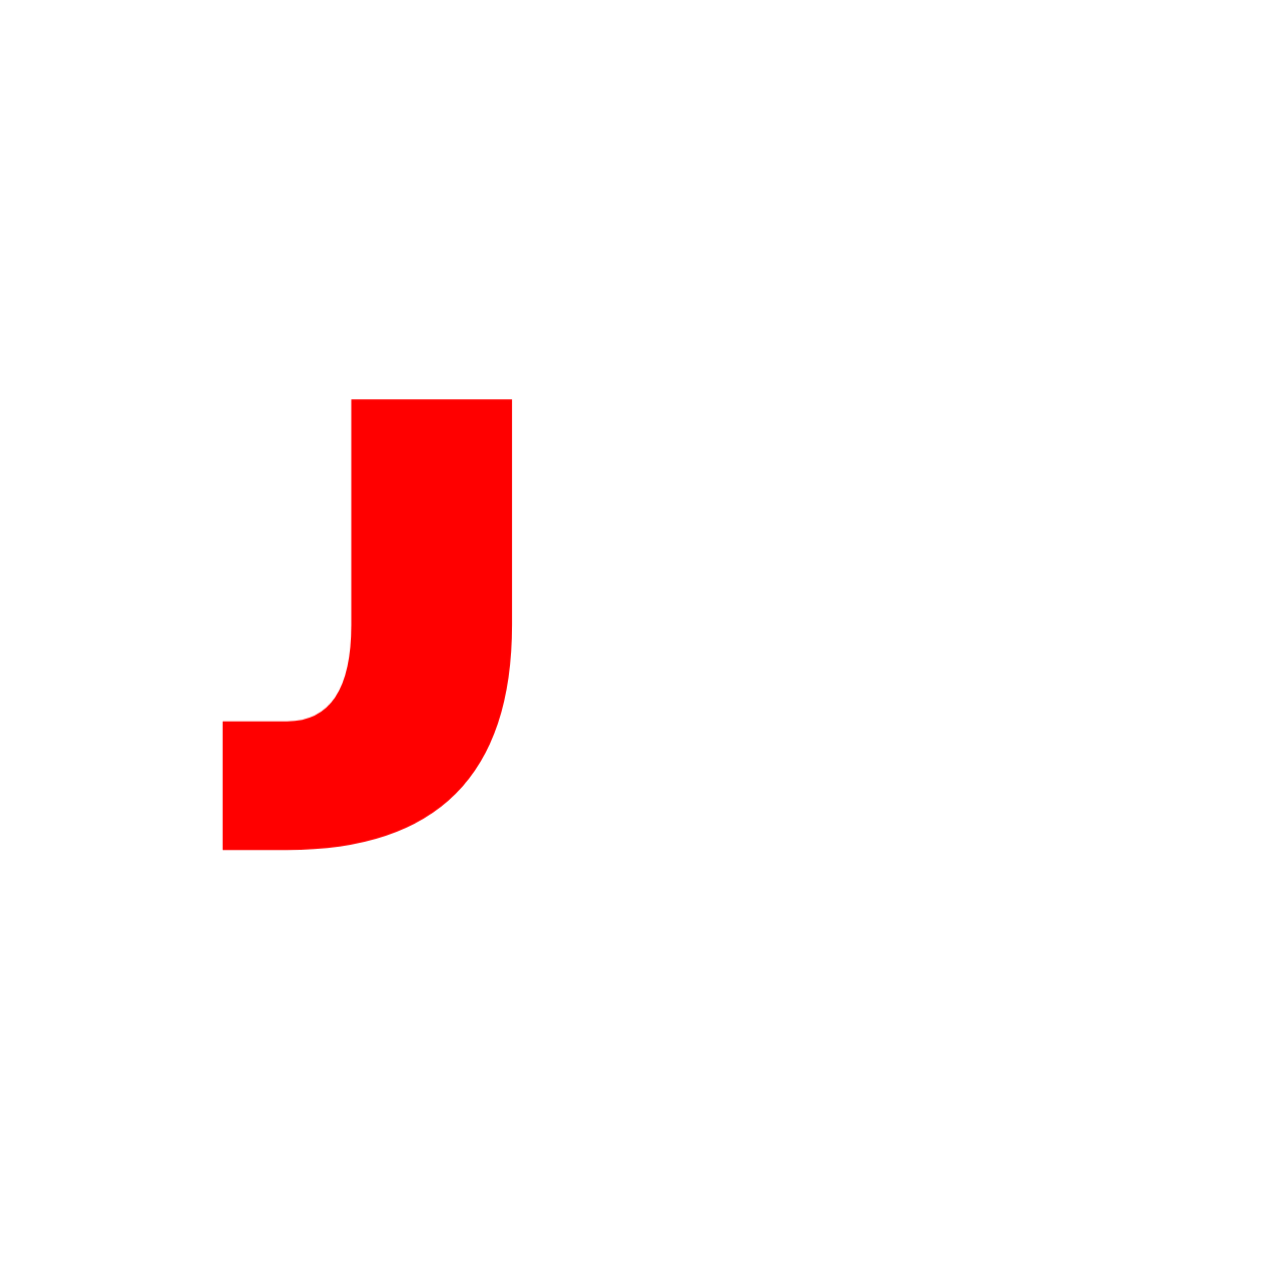 💥 Project Slayers Script OP (Mobile) – Juninho Scripts